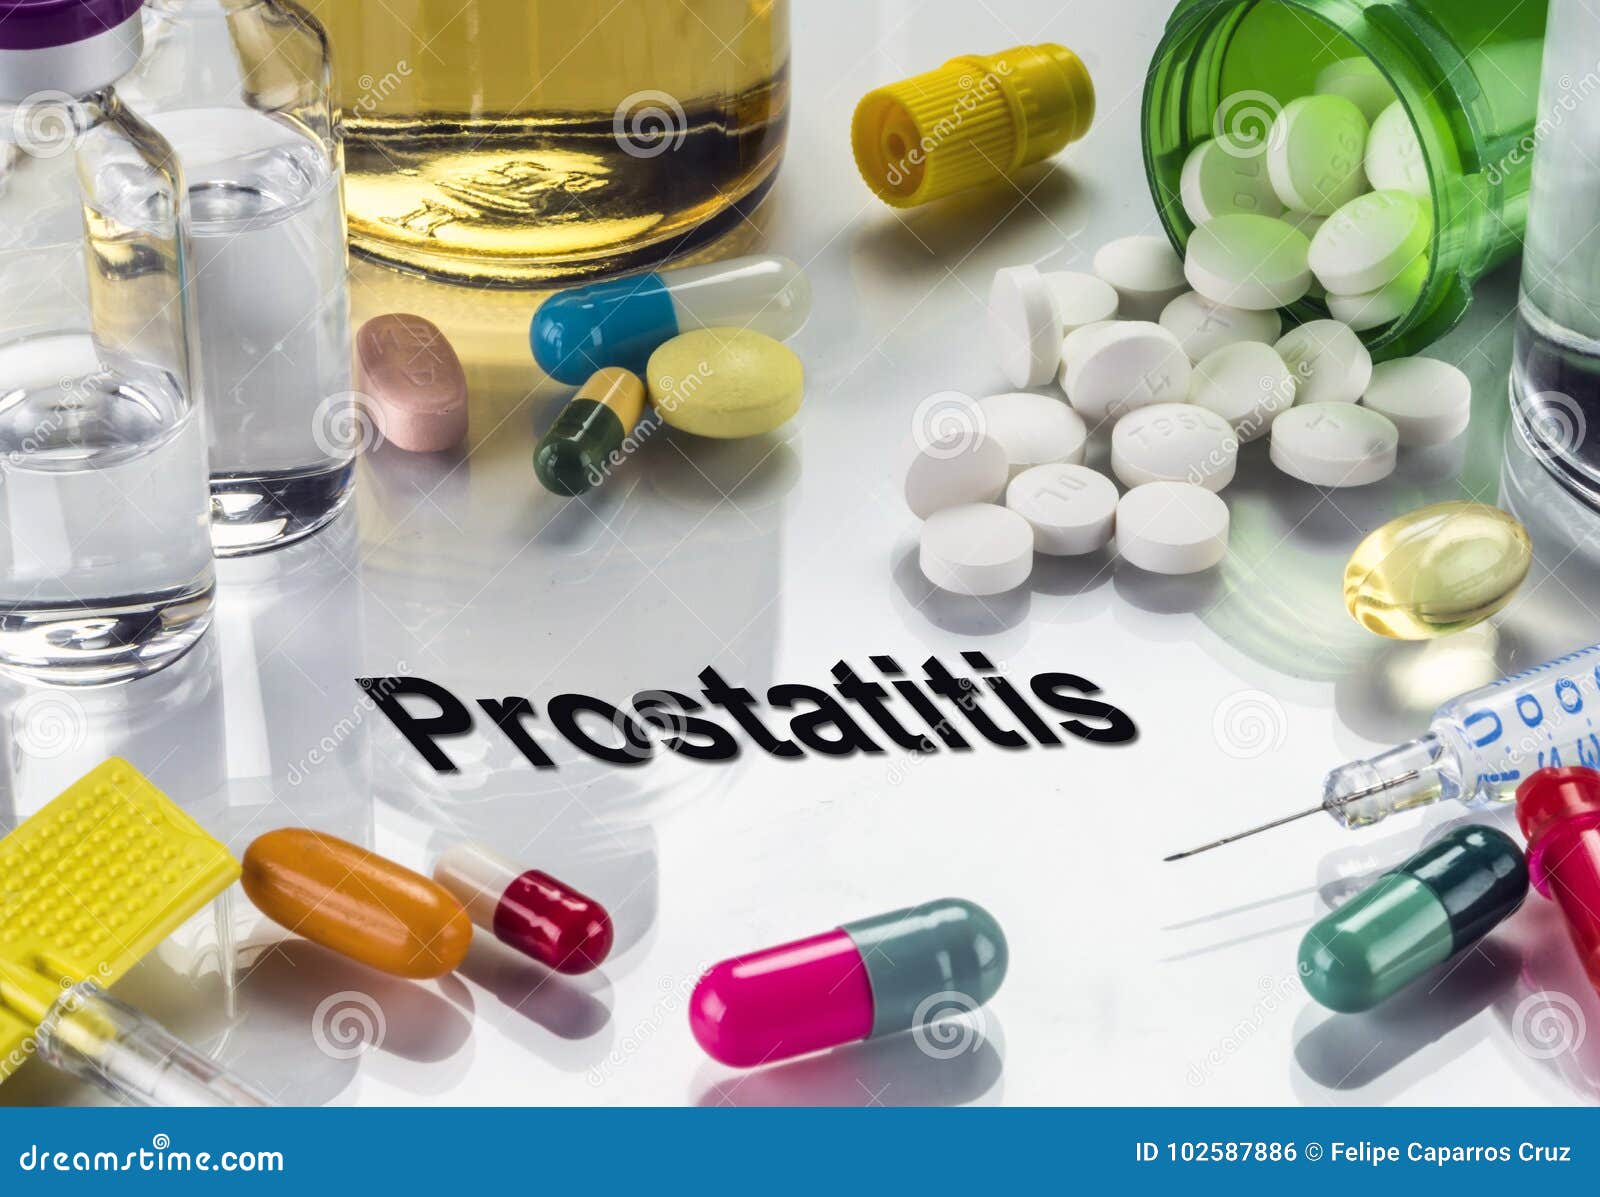 Toblets for prostatitis - Népi receptek a prosztatitis- kezelés